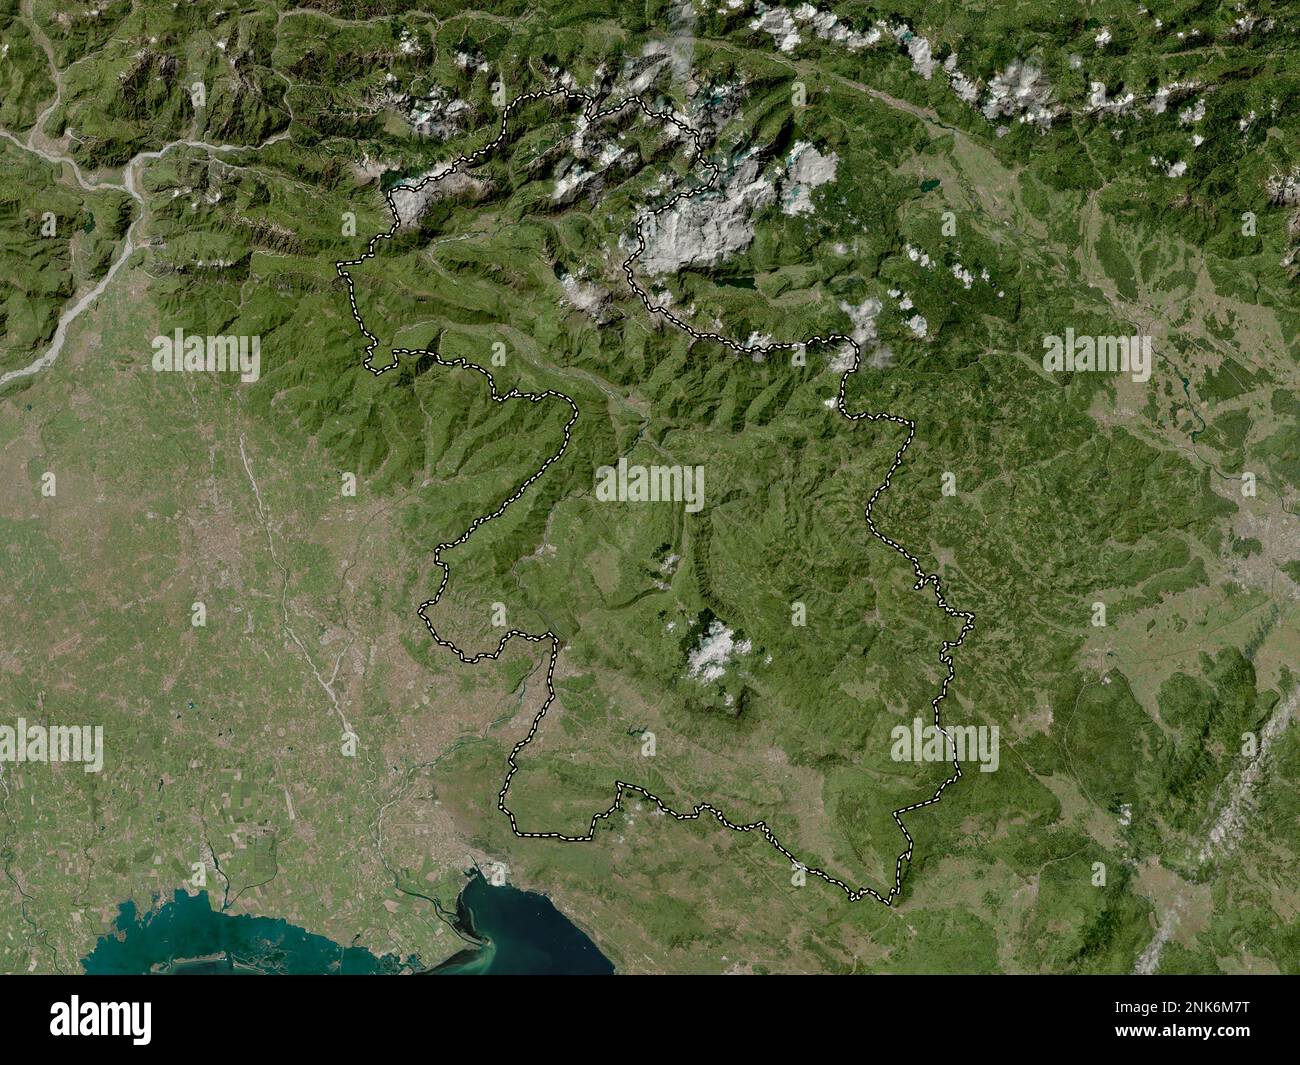 Goriska, regione statistica della Slovenia. Mappa satellitare ad alta risoluzione Foto Stock